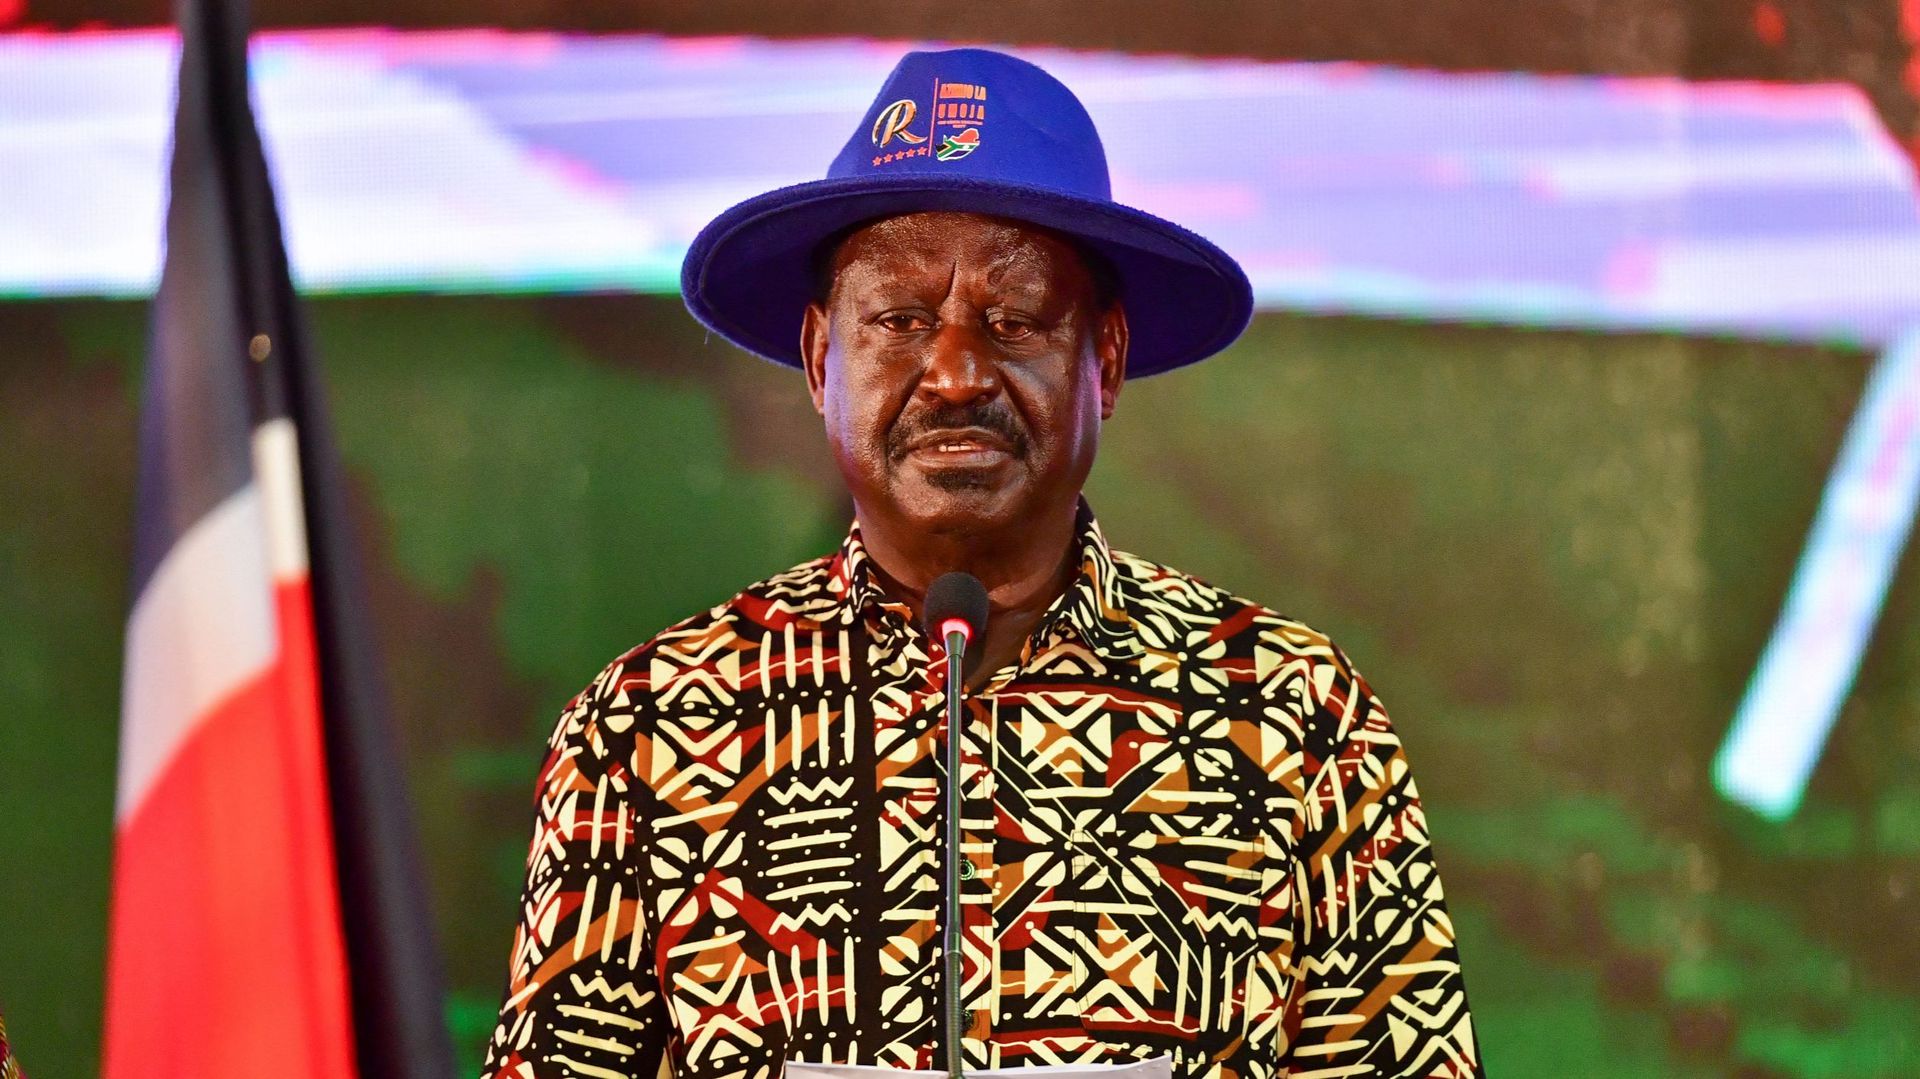 Raila Odinga, candidat présidentiel défait, s’exprime lors d’une conférence de presse au Kenyatta International Convention Centre (KICC) à Nairobi, le 16 août 2022.